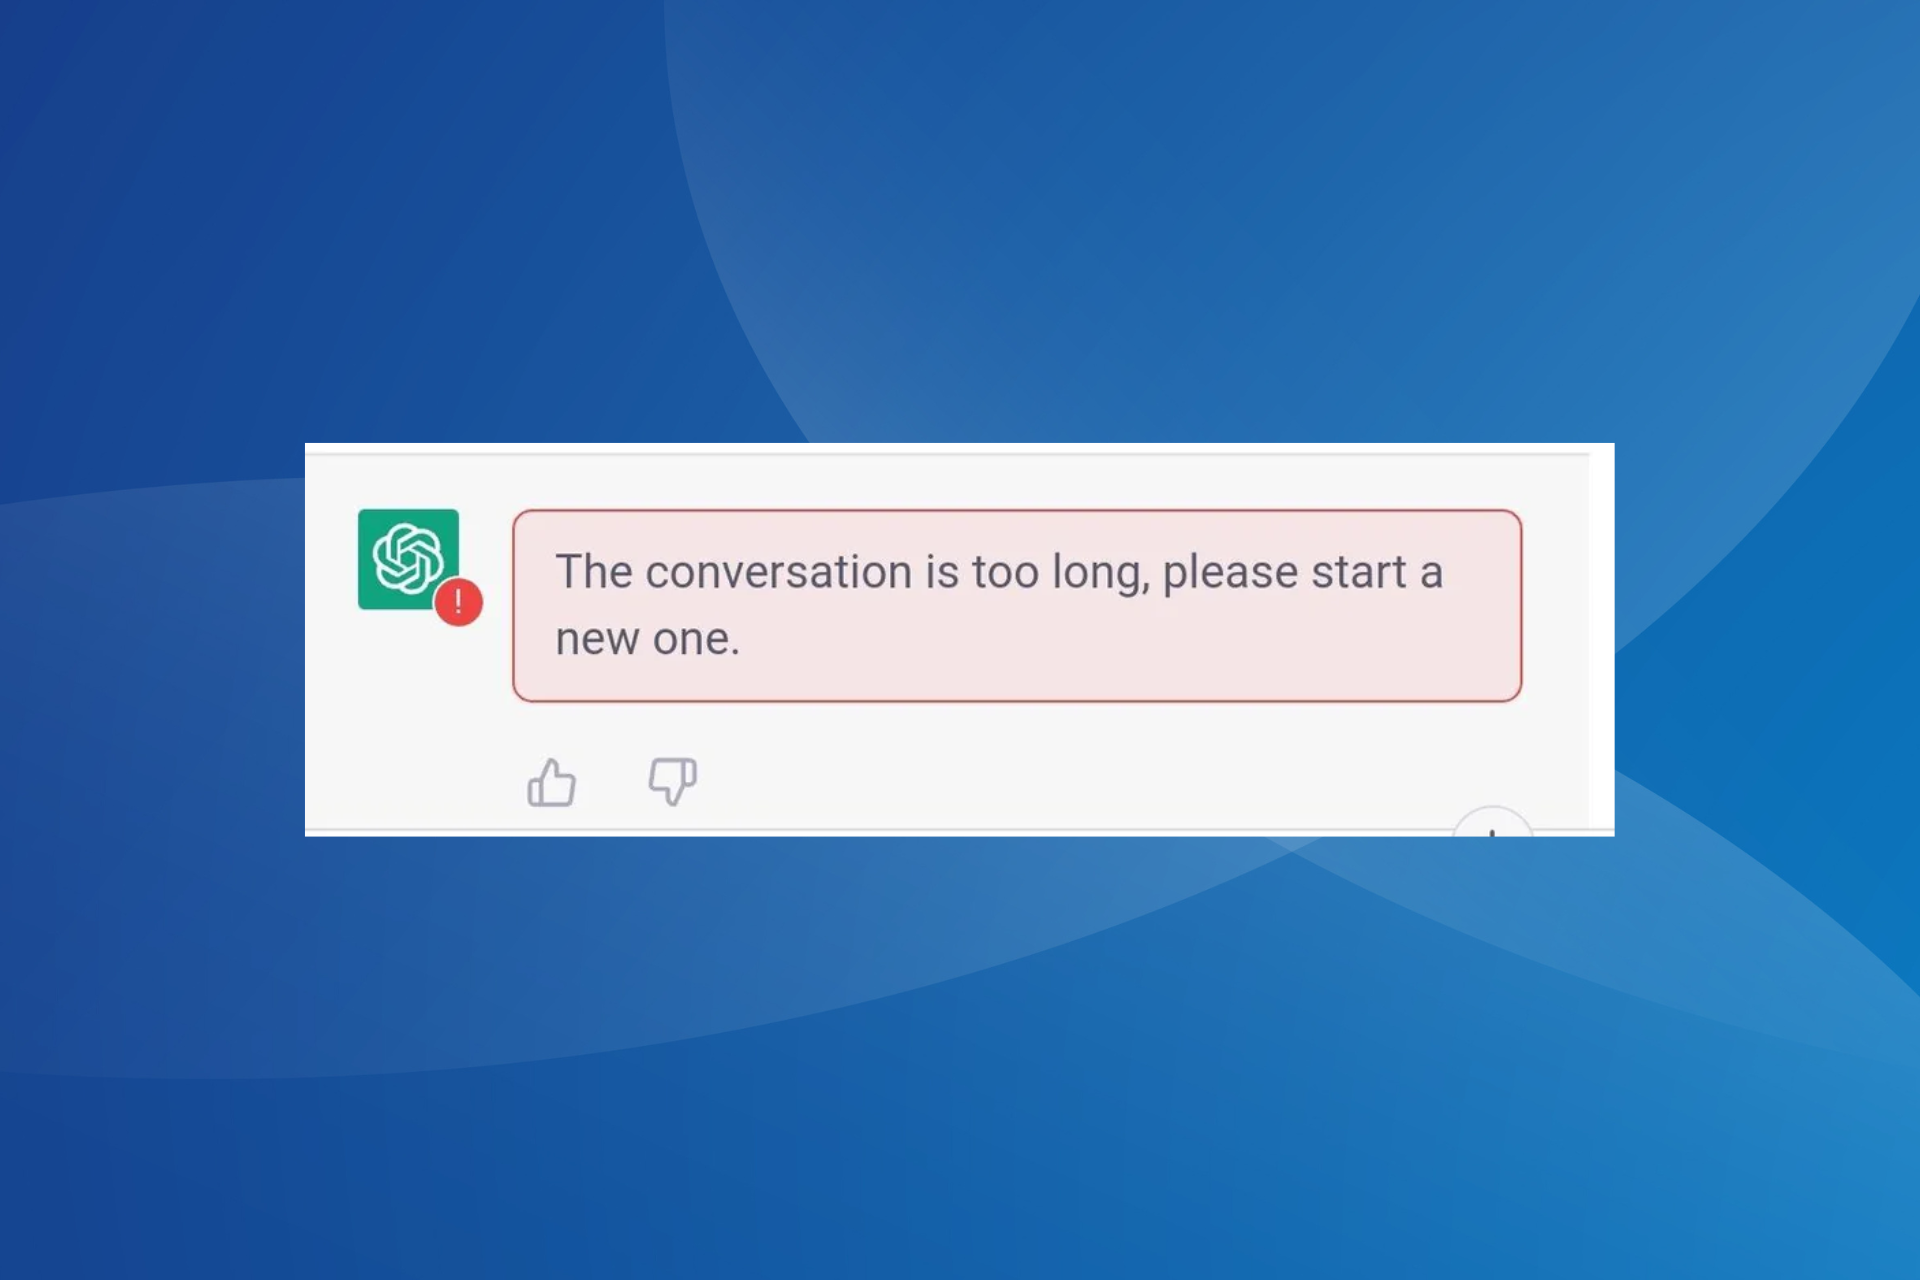 Arreglar el chatgpt la conversación es un error demasiado largo